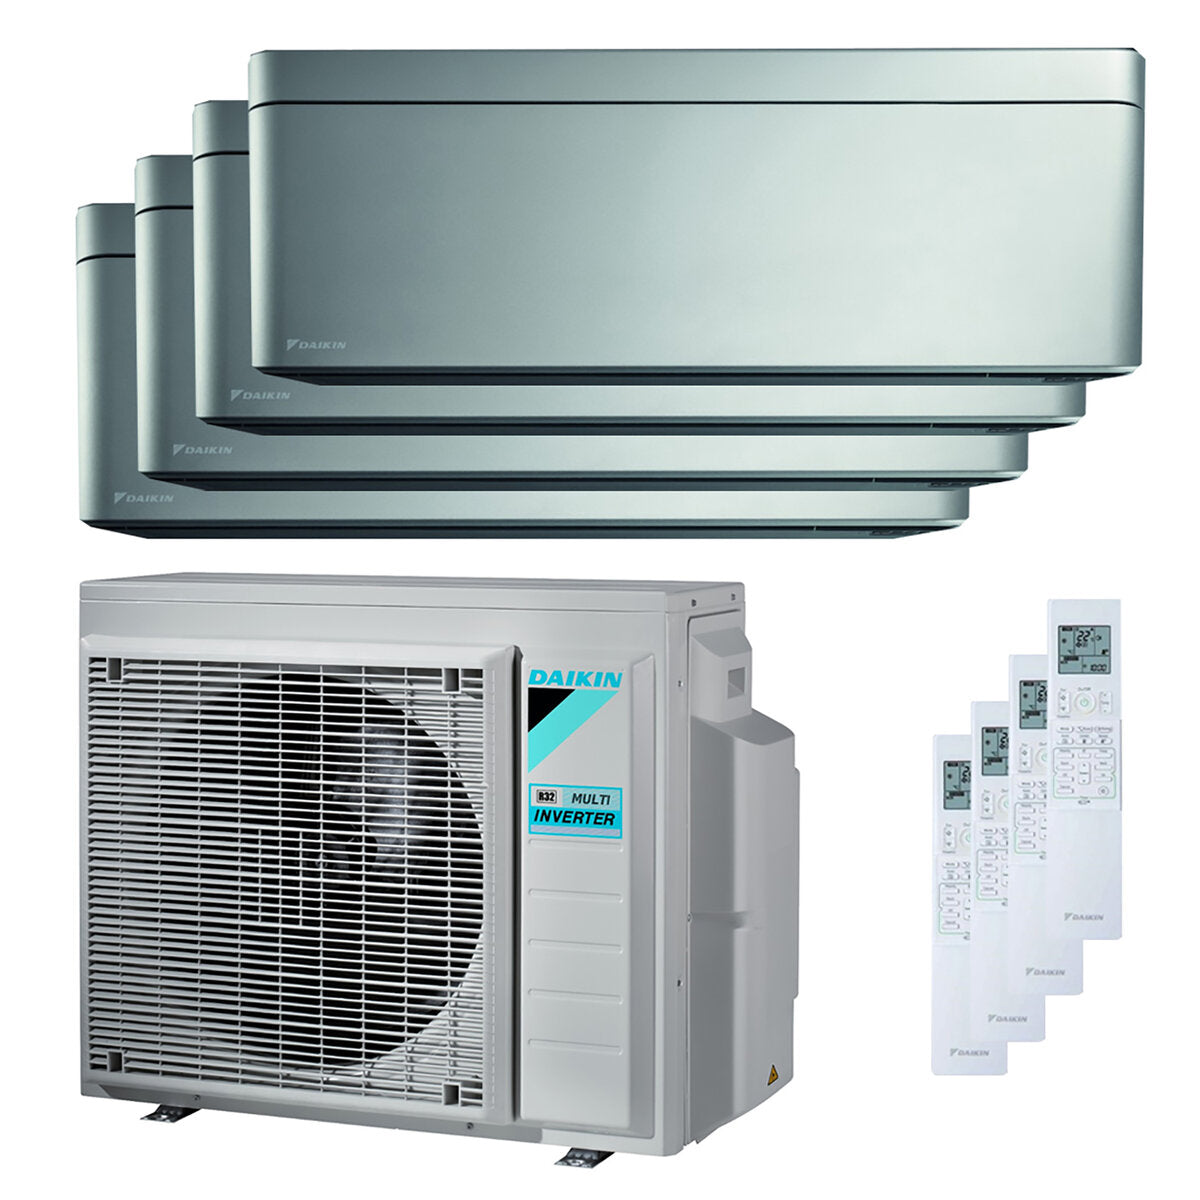 Daikin Stilvolle quadratische Split-Klimaanlage 7000 + 7000 + 9000 + 15000 BTU Wechselrichter A ++ WLAN-Außengerät 6,8 kW